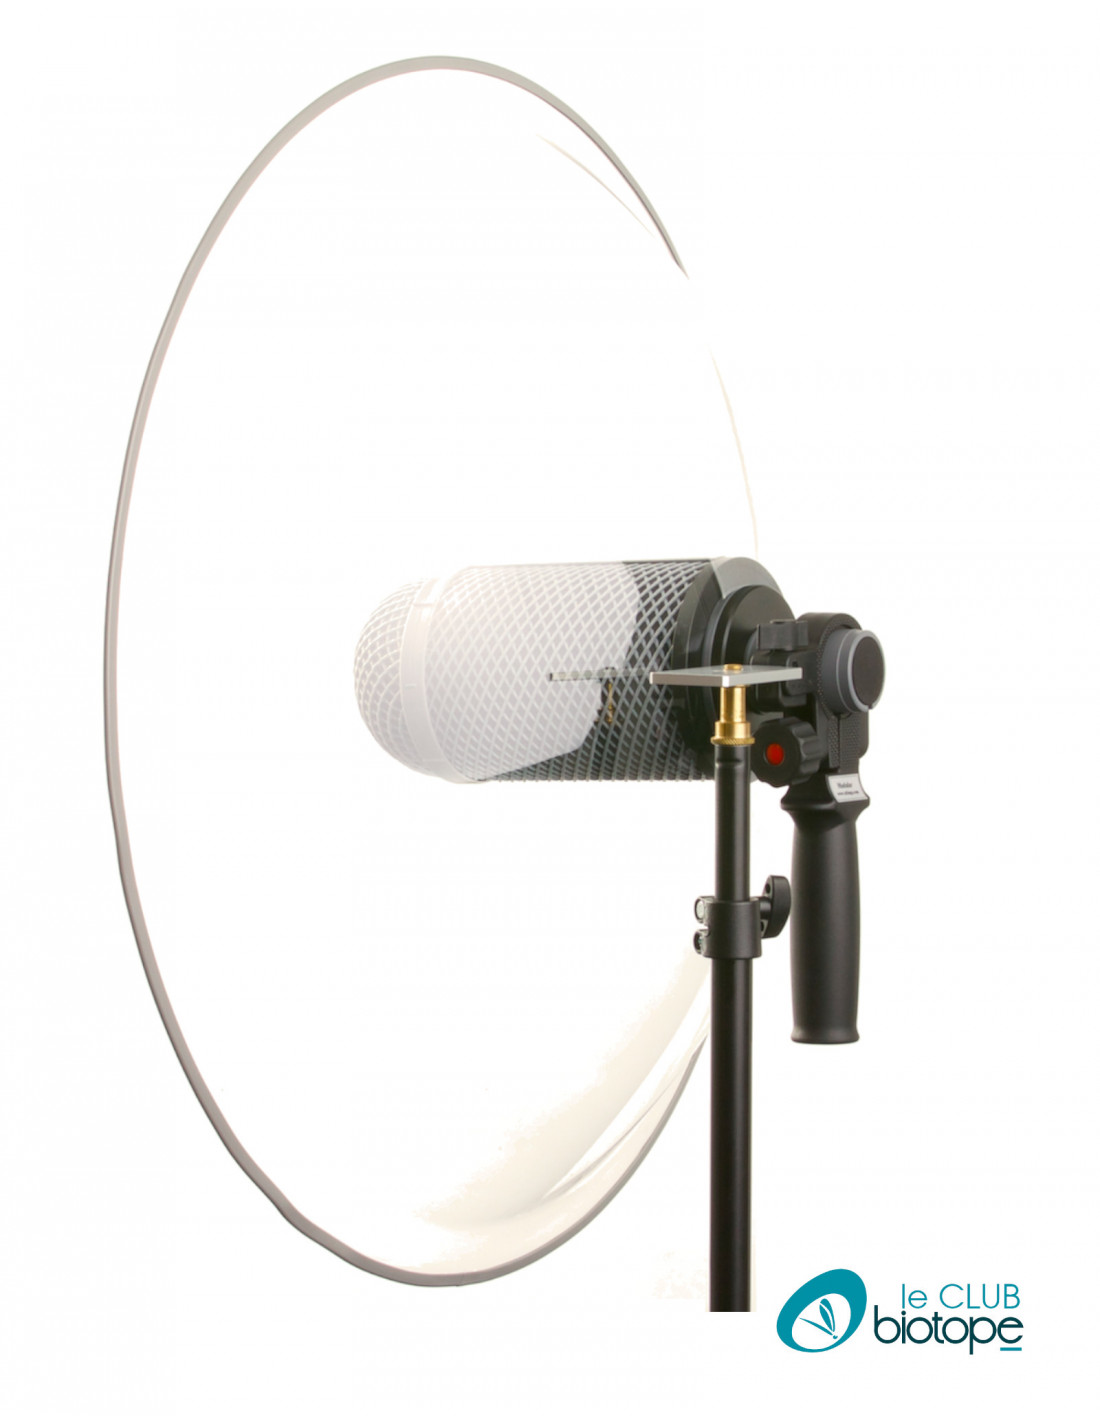 Guide d'utilisation du microphone parabolique compact DODOTRONIC